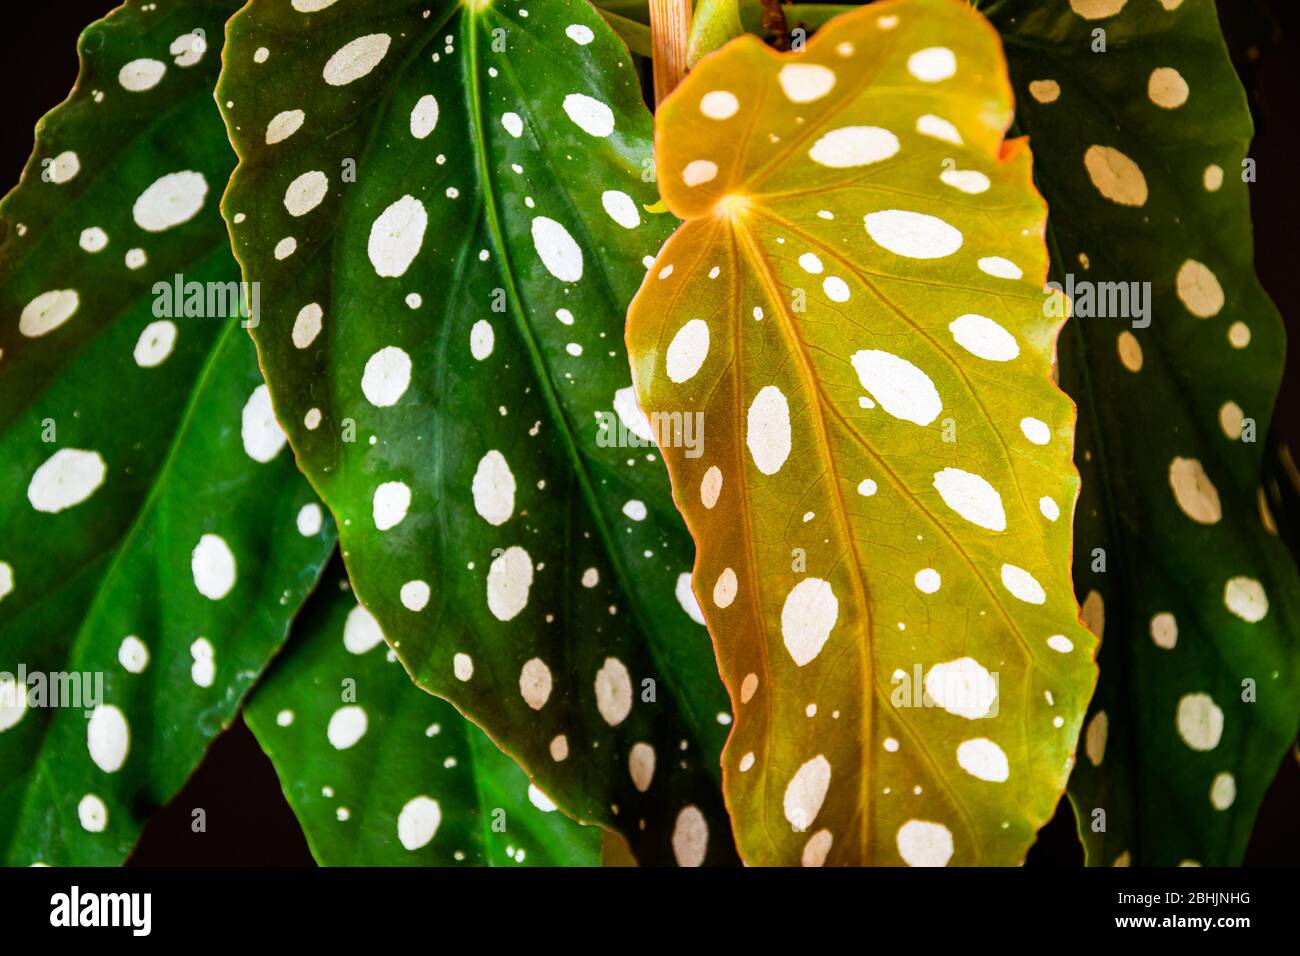 Gros plan sur les feuilles à motifs de polka-point de la polka-dot mensonia (begonia maculata var.. Wightii) maison. Détails uniques de la maison. Banque D'Images